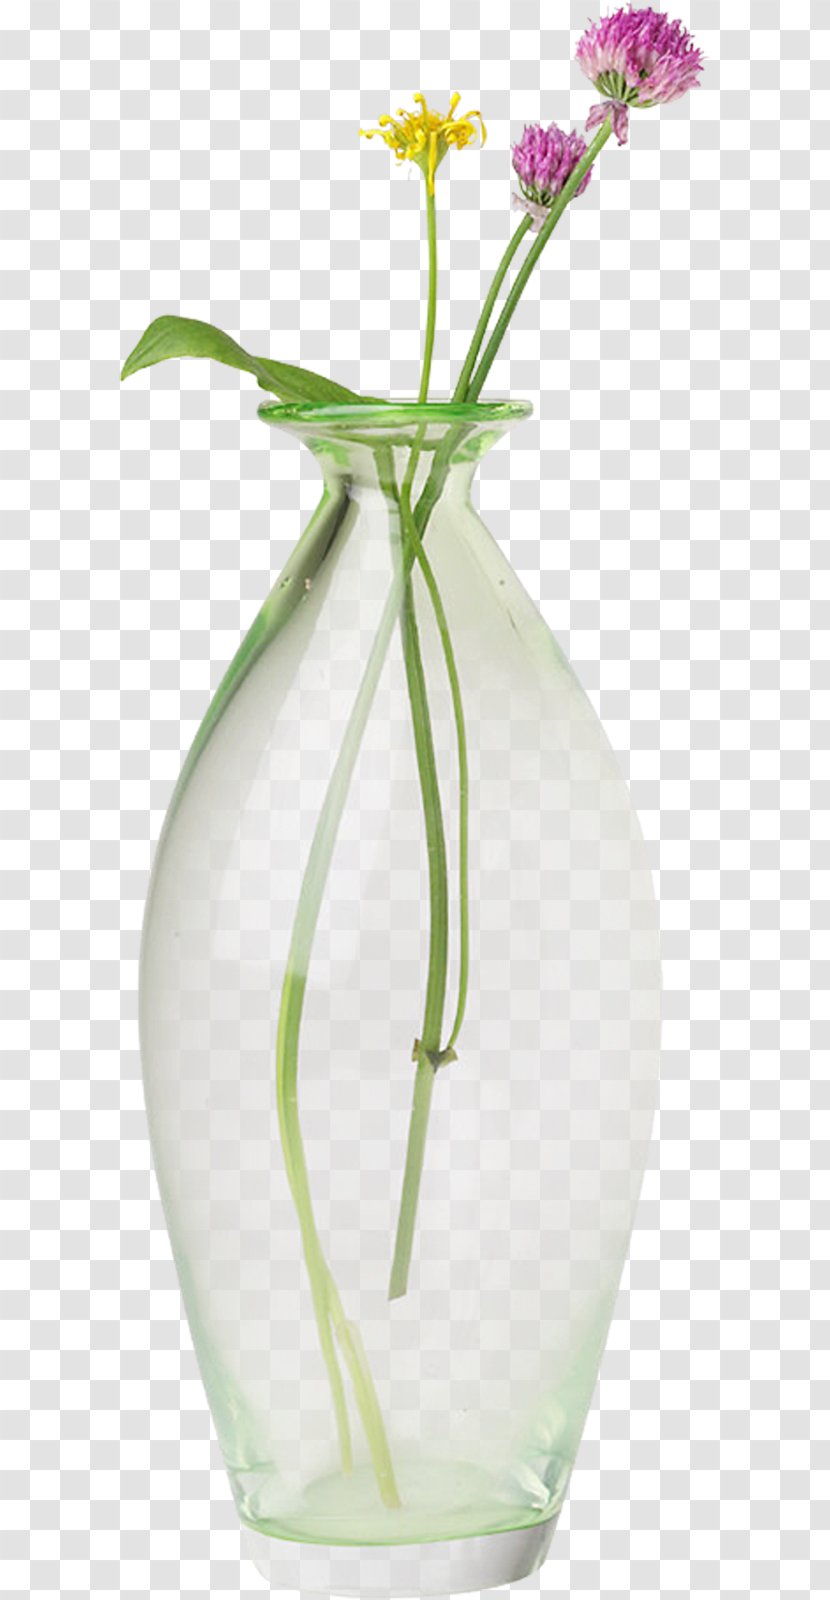 Floral Design Vase - Plant Stem Transparent PNG